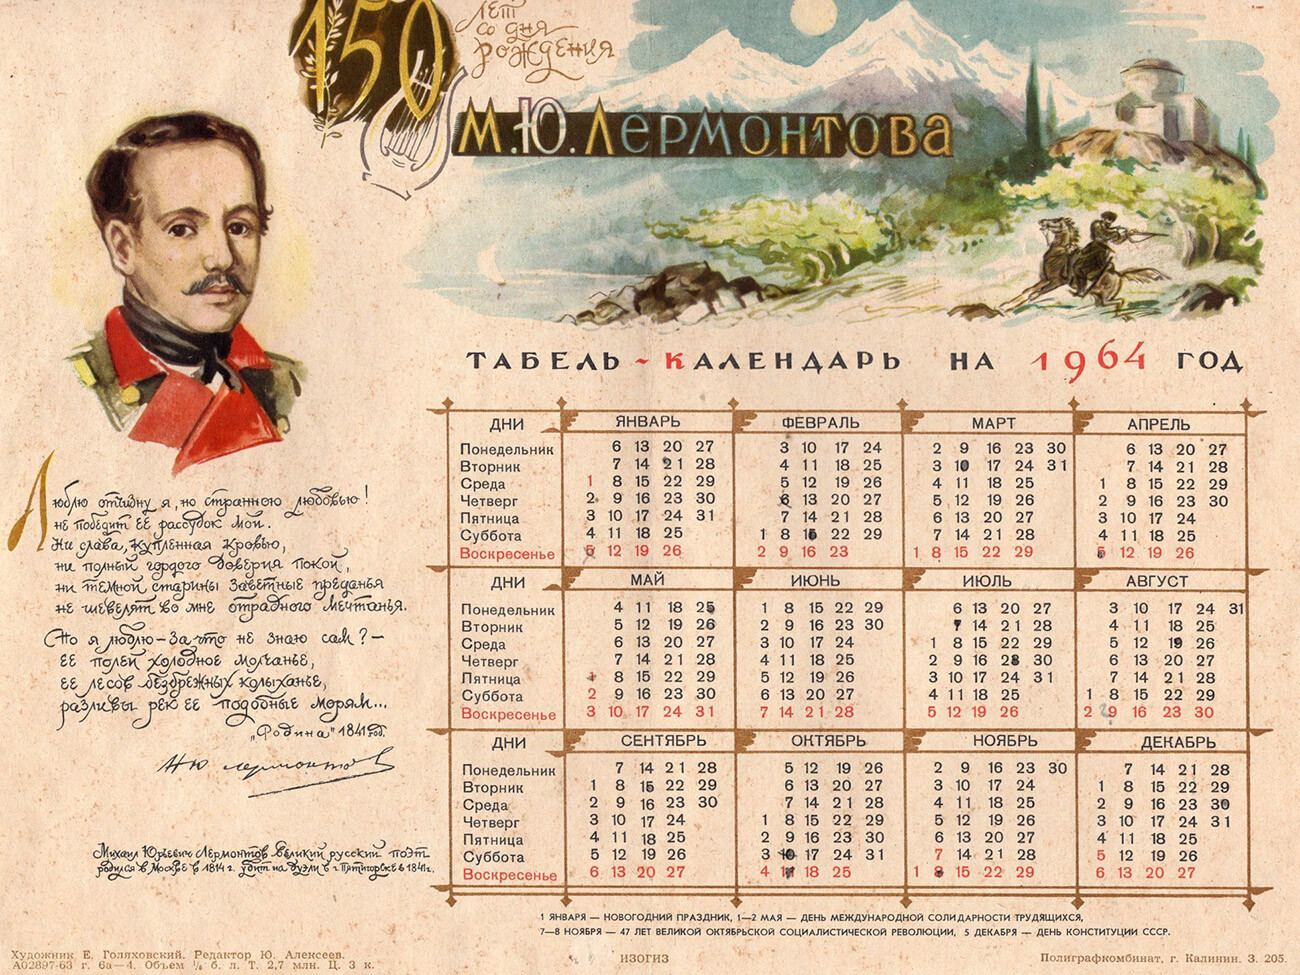 Un calendario soviético de 1964 (dedicado al 150 aniversario del poeta Mijaíl Lérmontov), con semanas de 7 días que comienzan el lunes